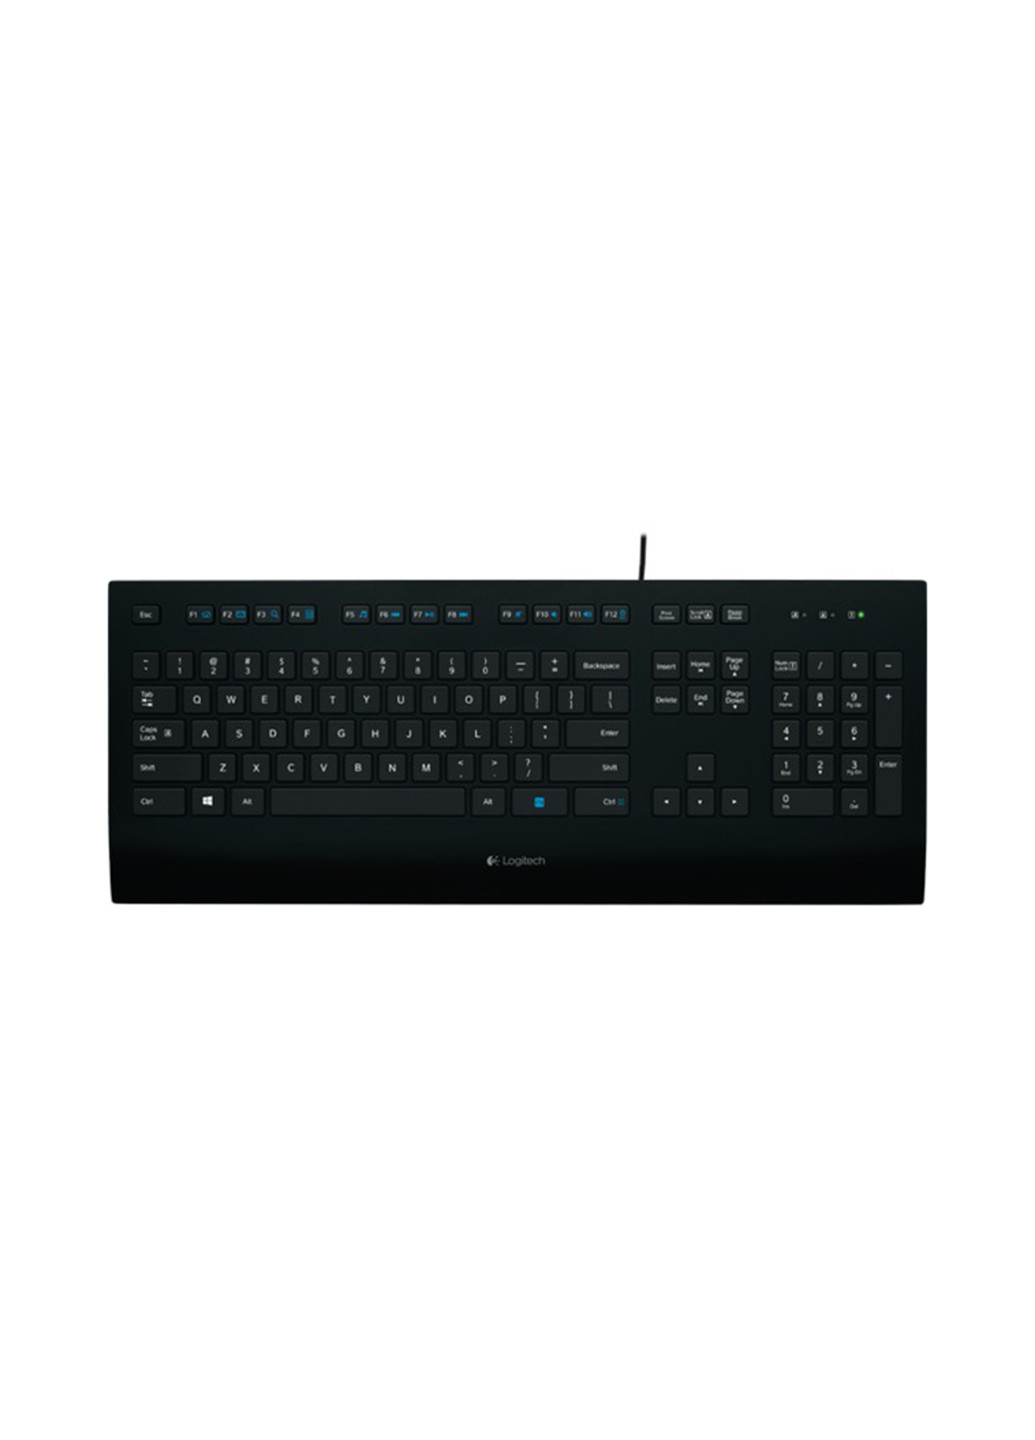 Проводная клавиатура Logitech k280e - intnl для бизнесса - русская раскладка (135165384)